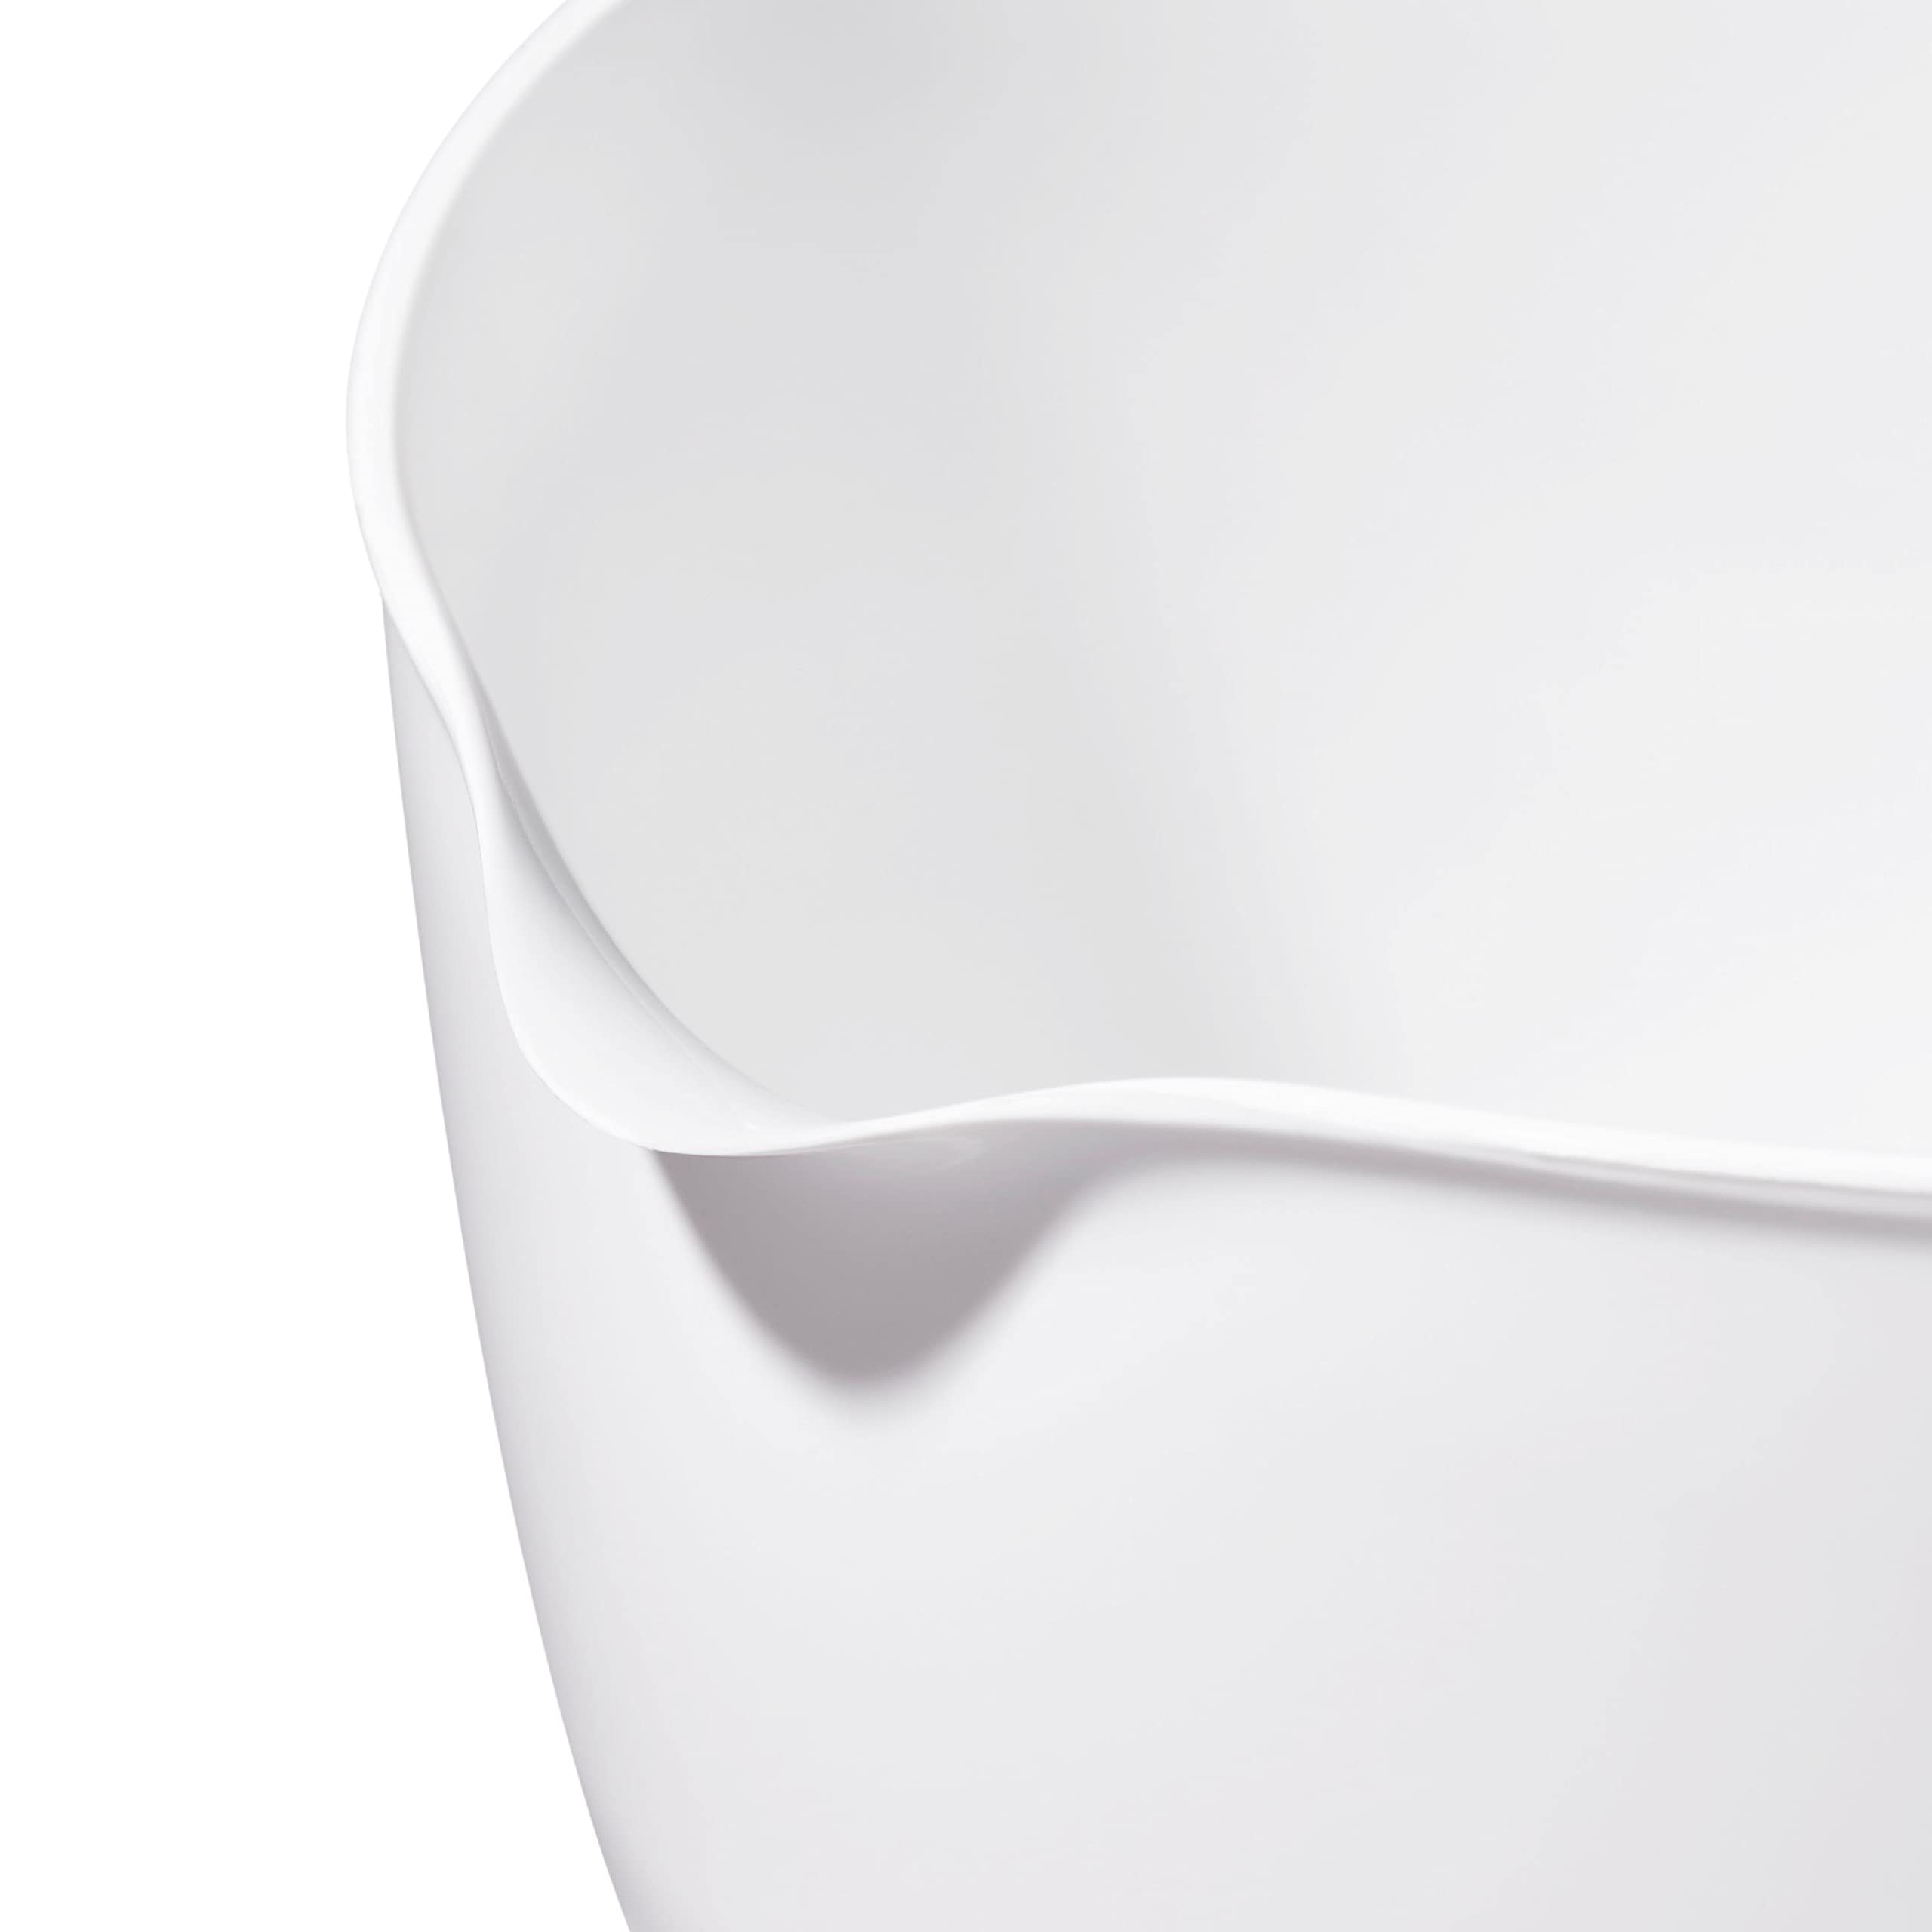 OXO Good Grips 3- Piece Plastic Mixing Bowl Set, 2500 ml,White/Black